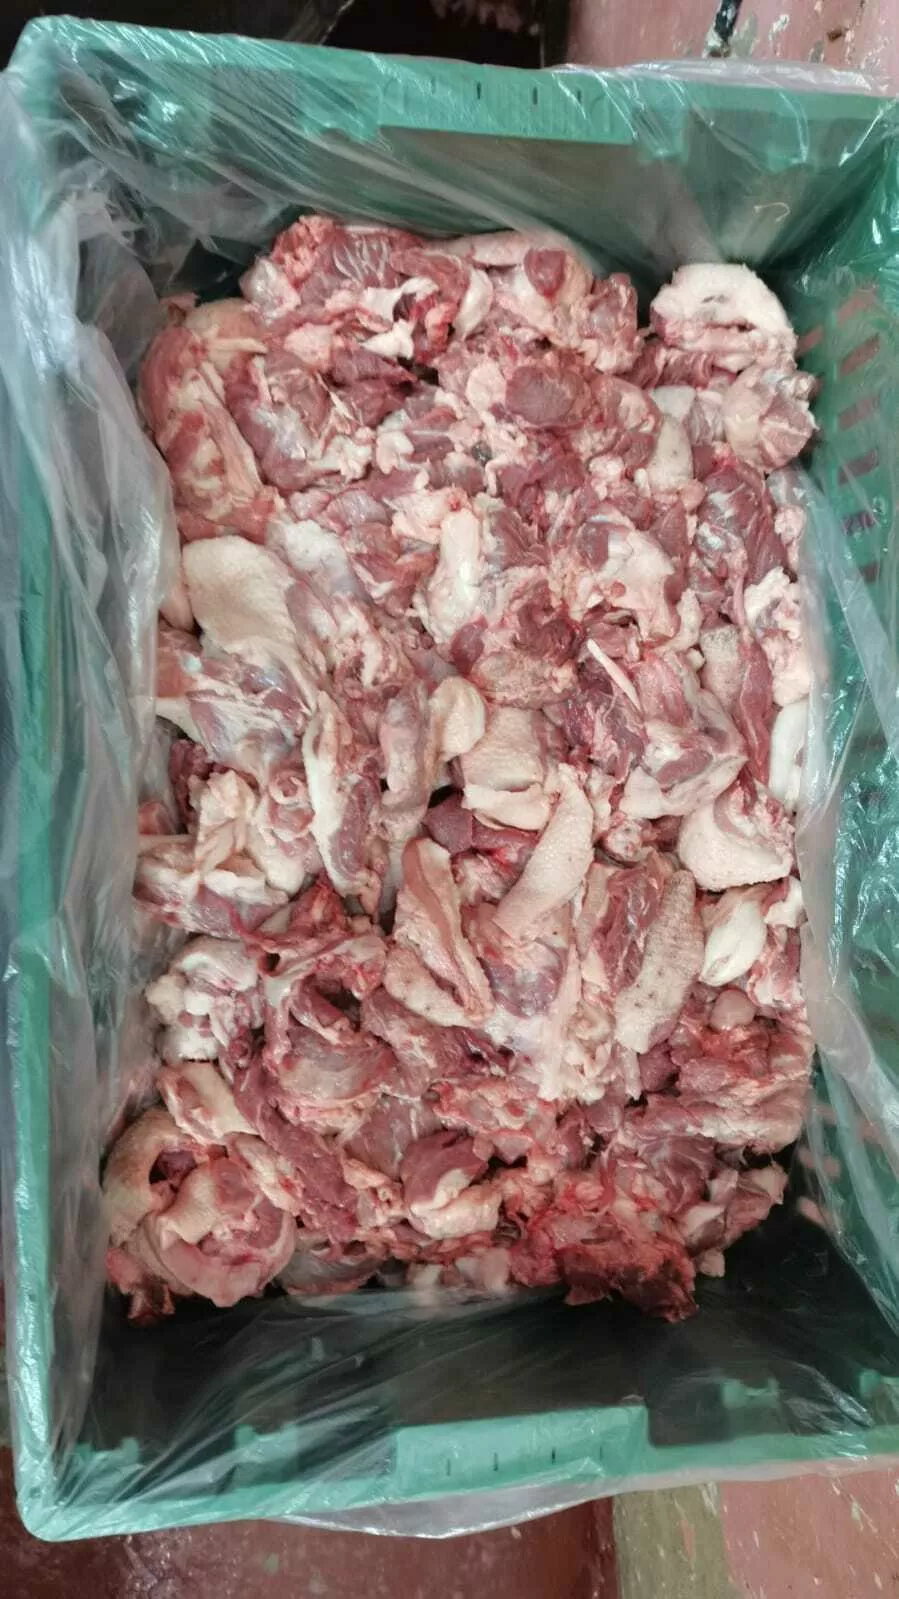 тримминг из мяса свиных голов в Саратове и Саратовской области